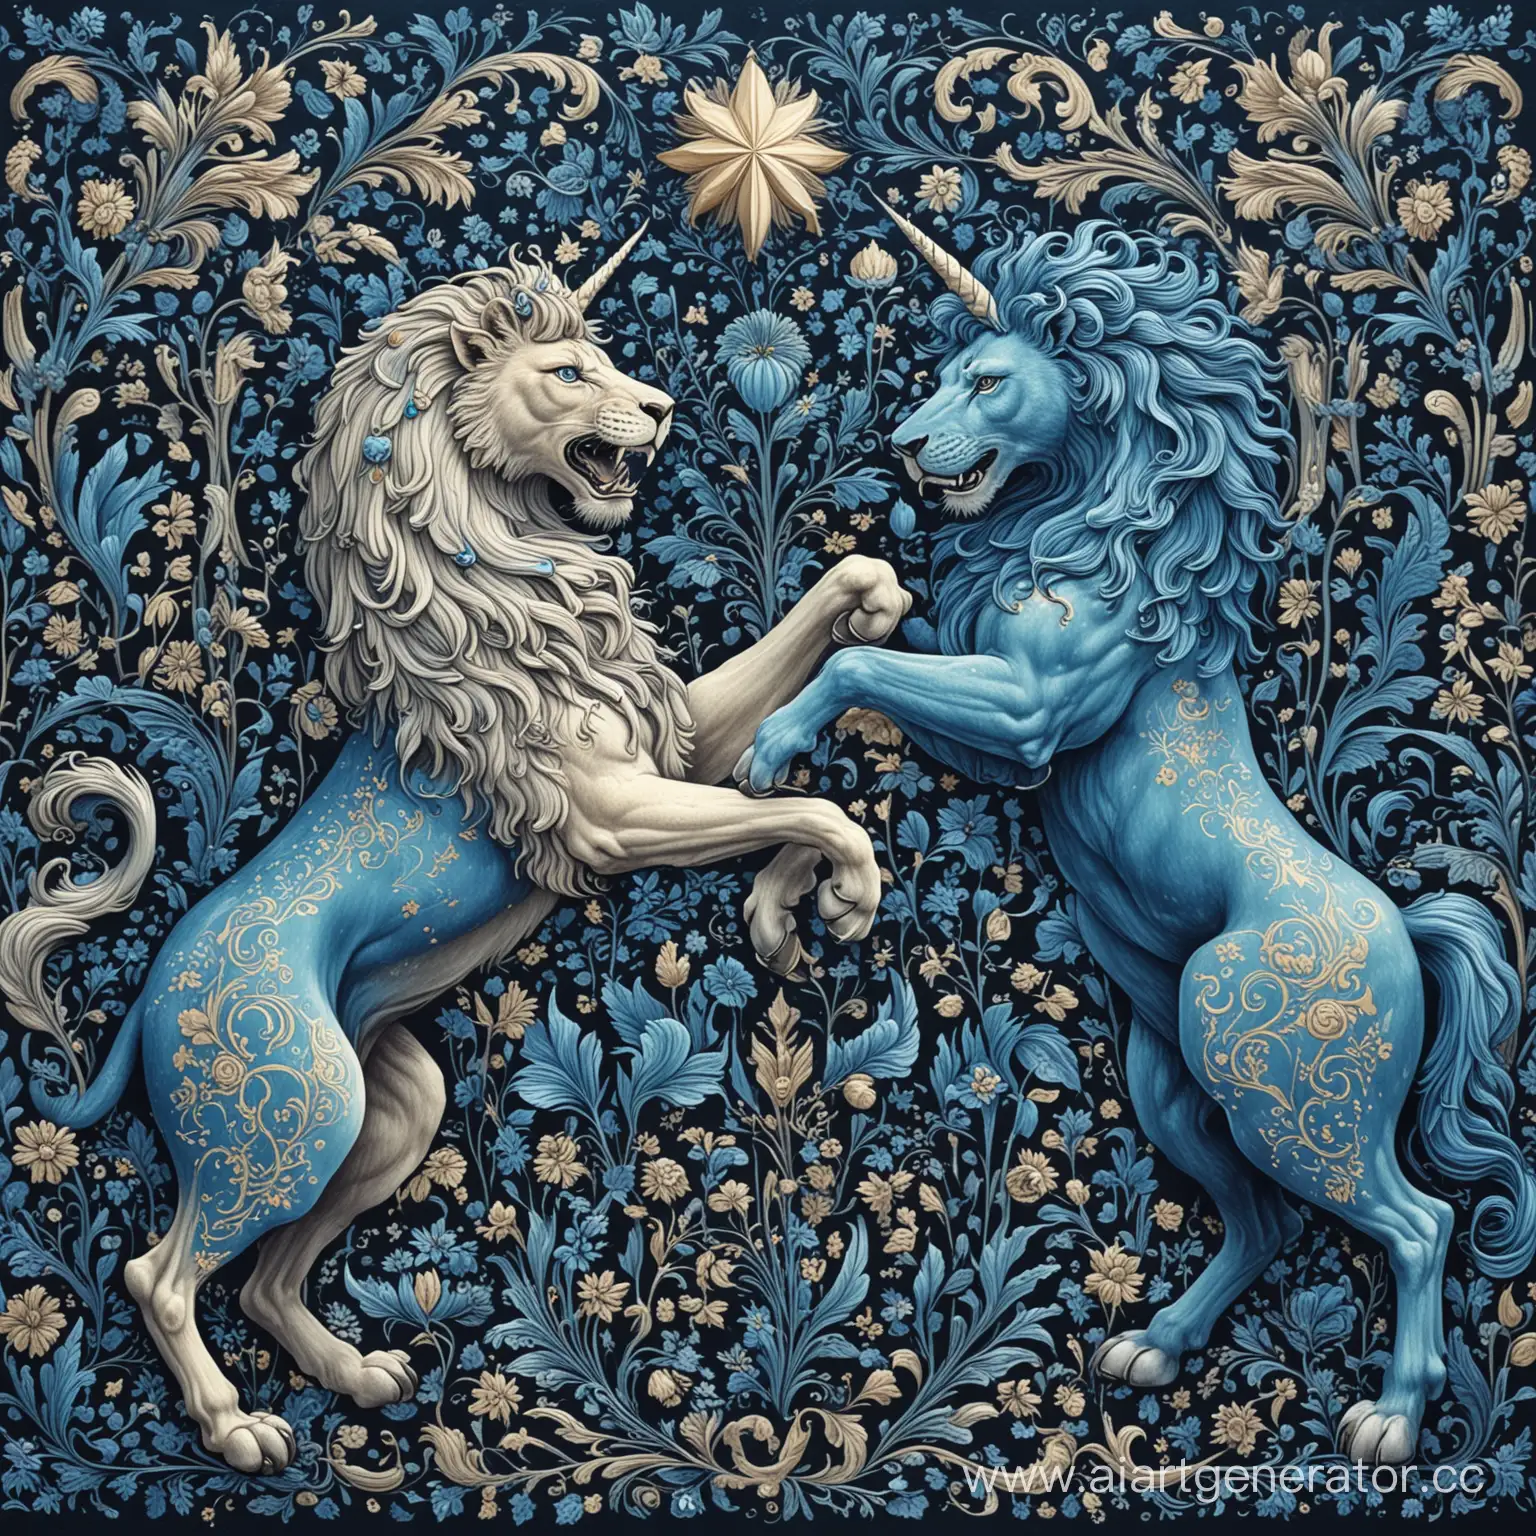 Lion-vs-Unicorn-Clash-in-Blue-Russian-Style